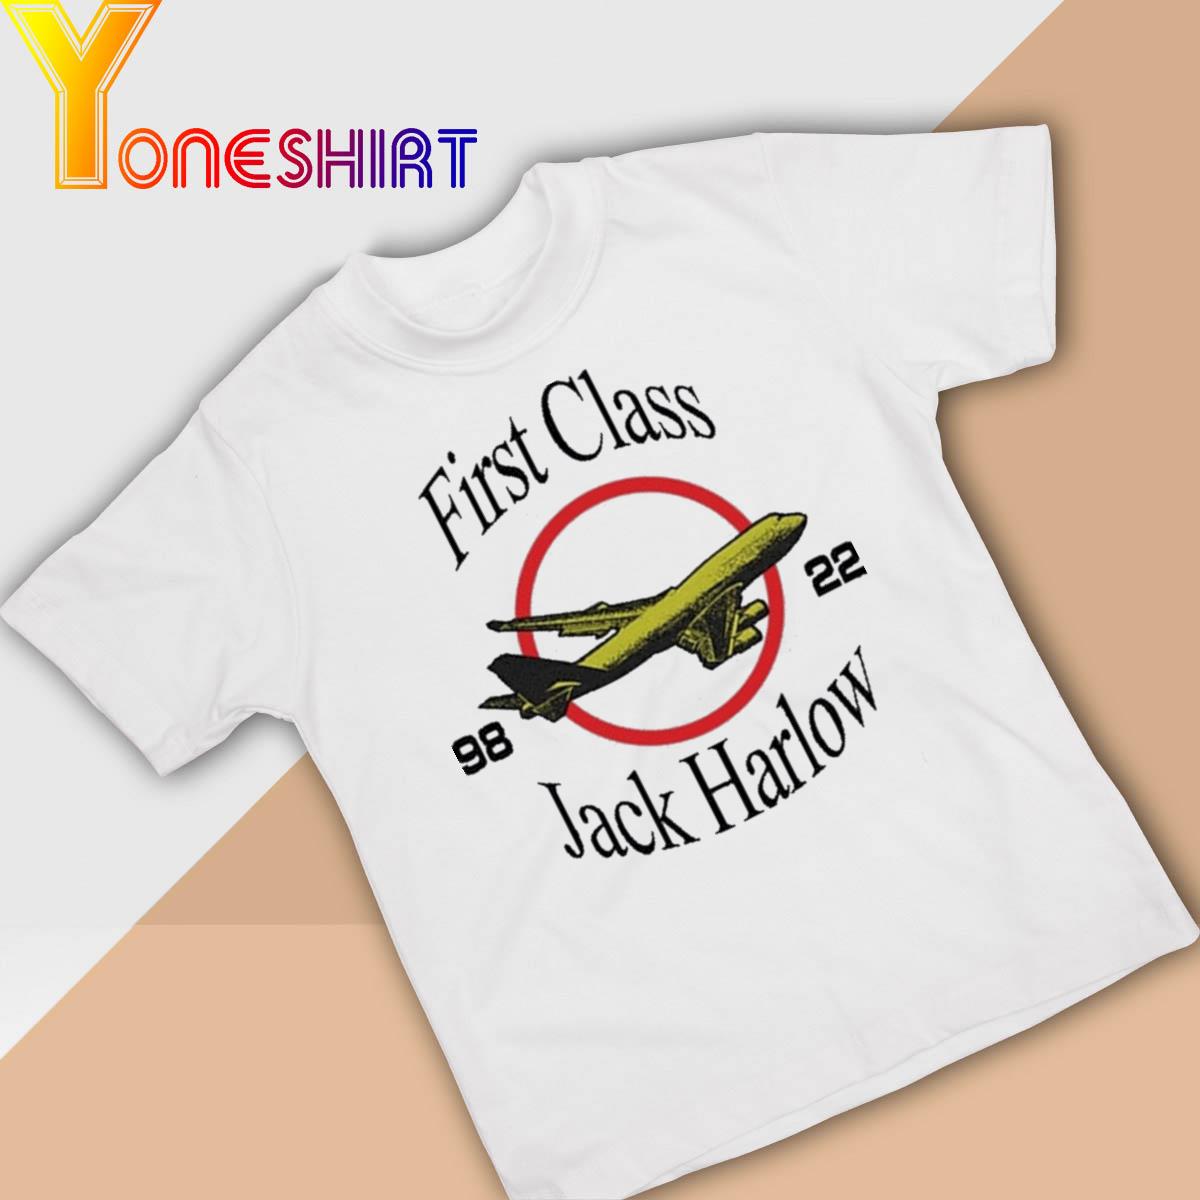 Official First Class Jack Harlow 9822 shirt